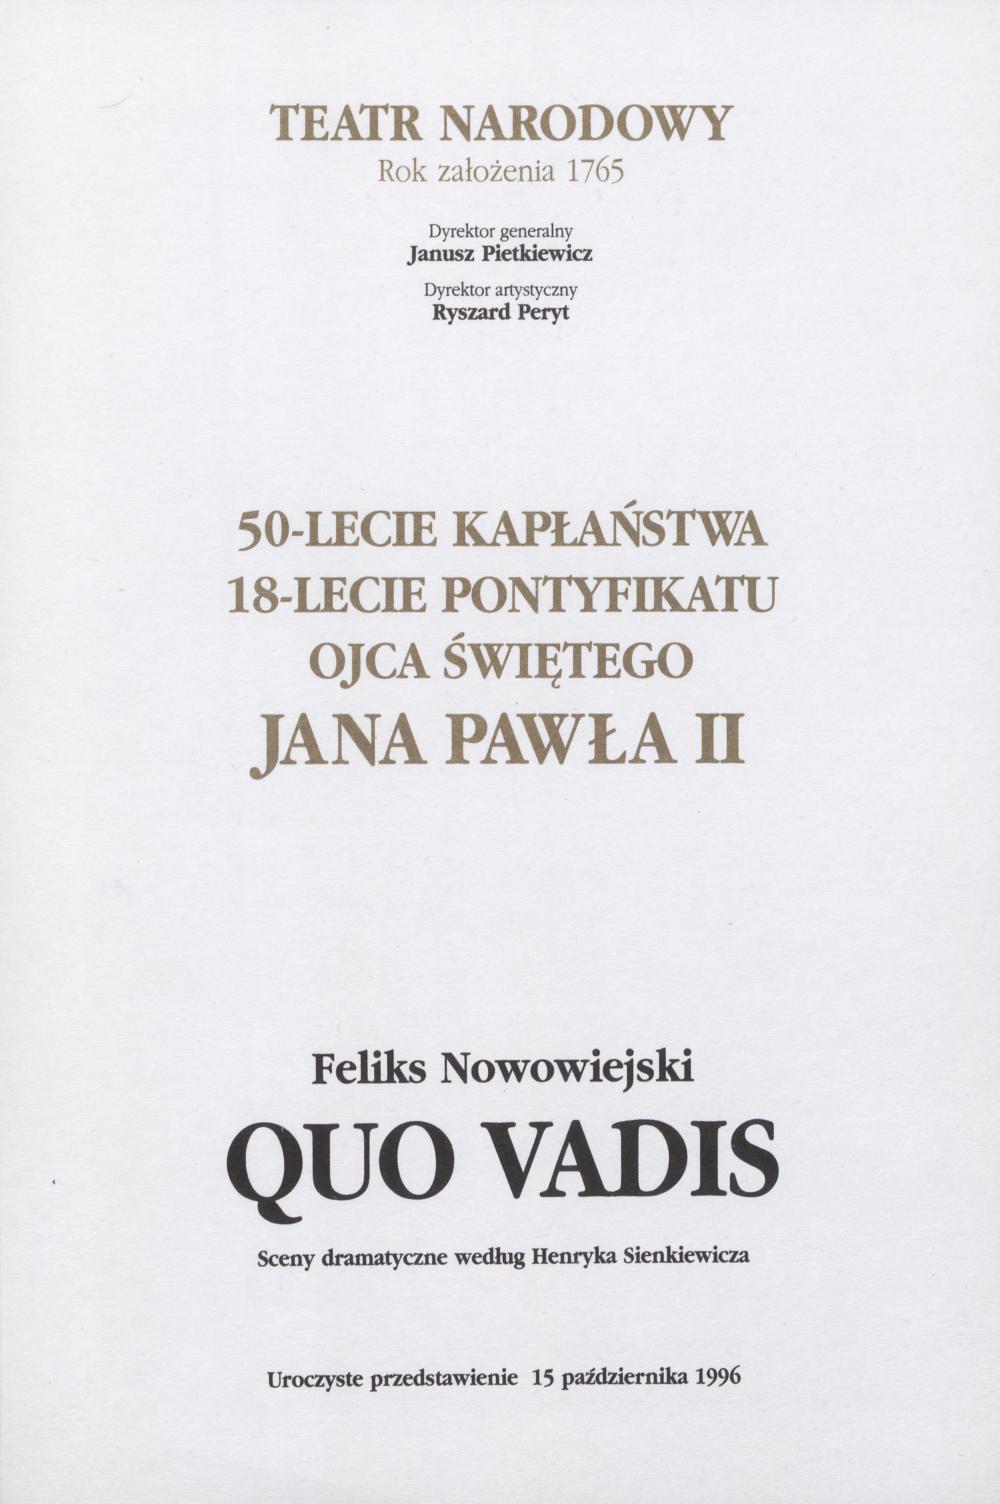 Program okolicznościowy „Quo Vadis” - Feliks Nowowiejski – 15-10-1996 - uroczyste przedstawienie z okazji 50-lecia Kapłaństwa i 18 lecia Pontyfikatu Ojca Świętego Jana Pawła II